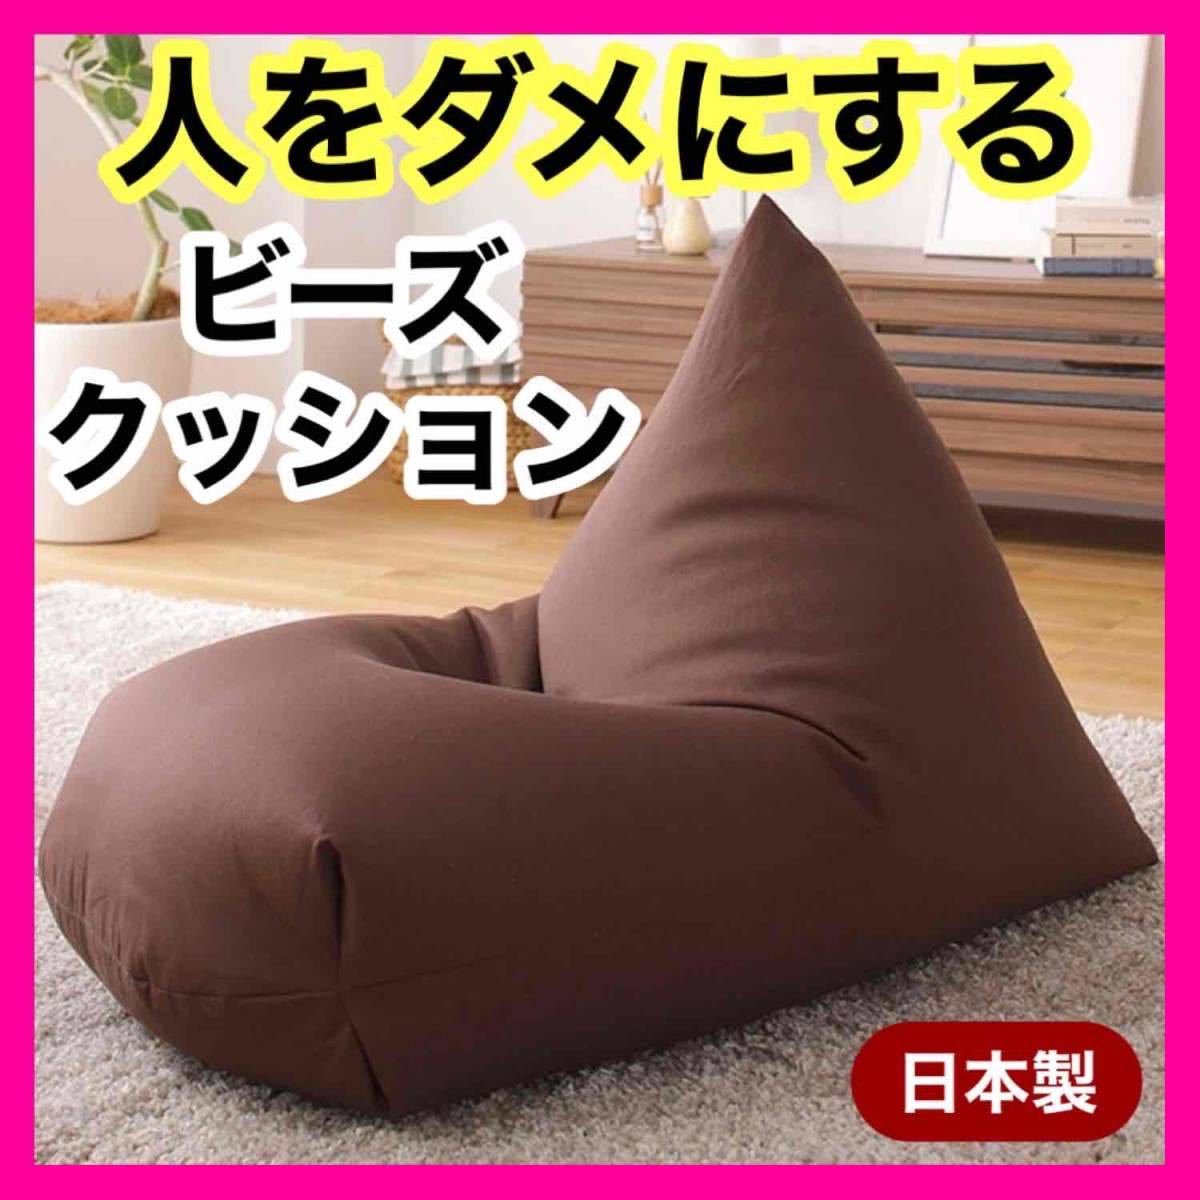  новый товар бисер диван подушка сделано в Японии текстильный .. соус одиночный Северная Европа человек .dame. делать пол подушка сиденье "zaisu" ребенок домашнее животное один местный .1 человек 